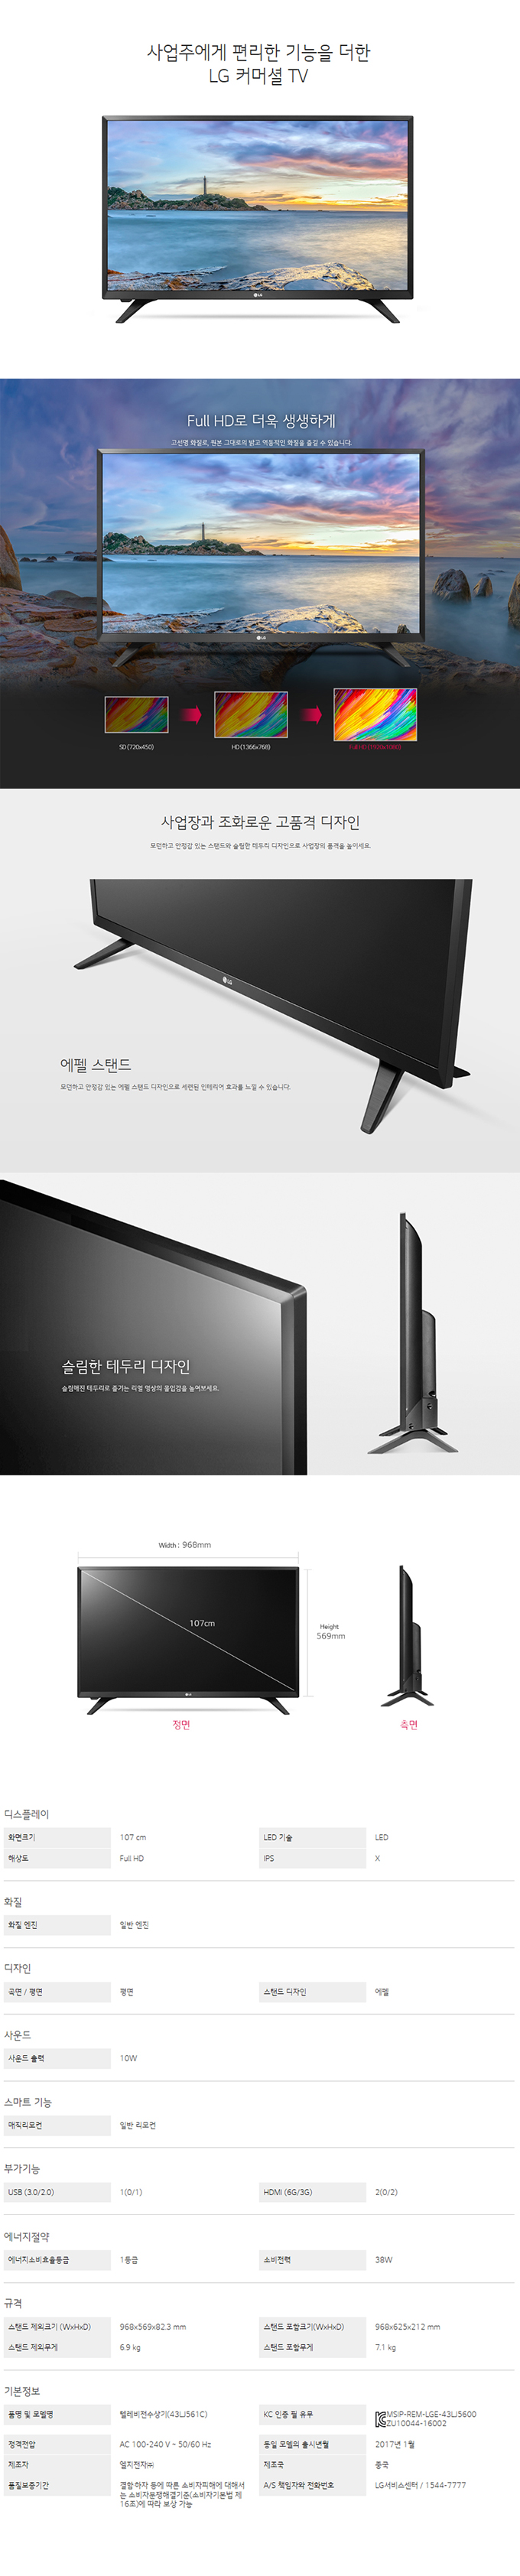 강남케이블 - LG 43인치 LED TV (43LJ561C) 상세보기